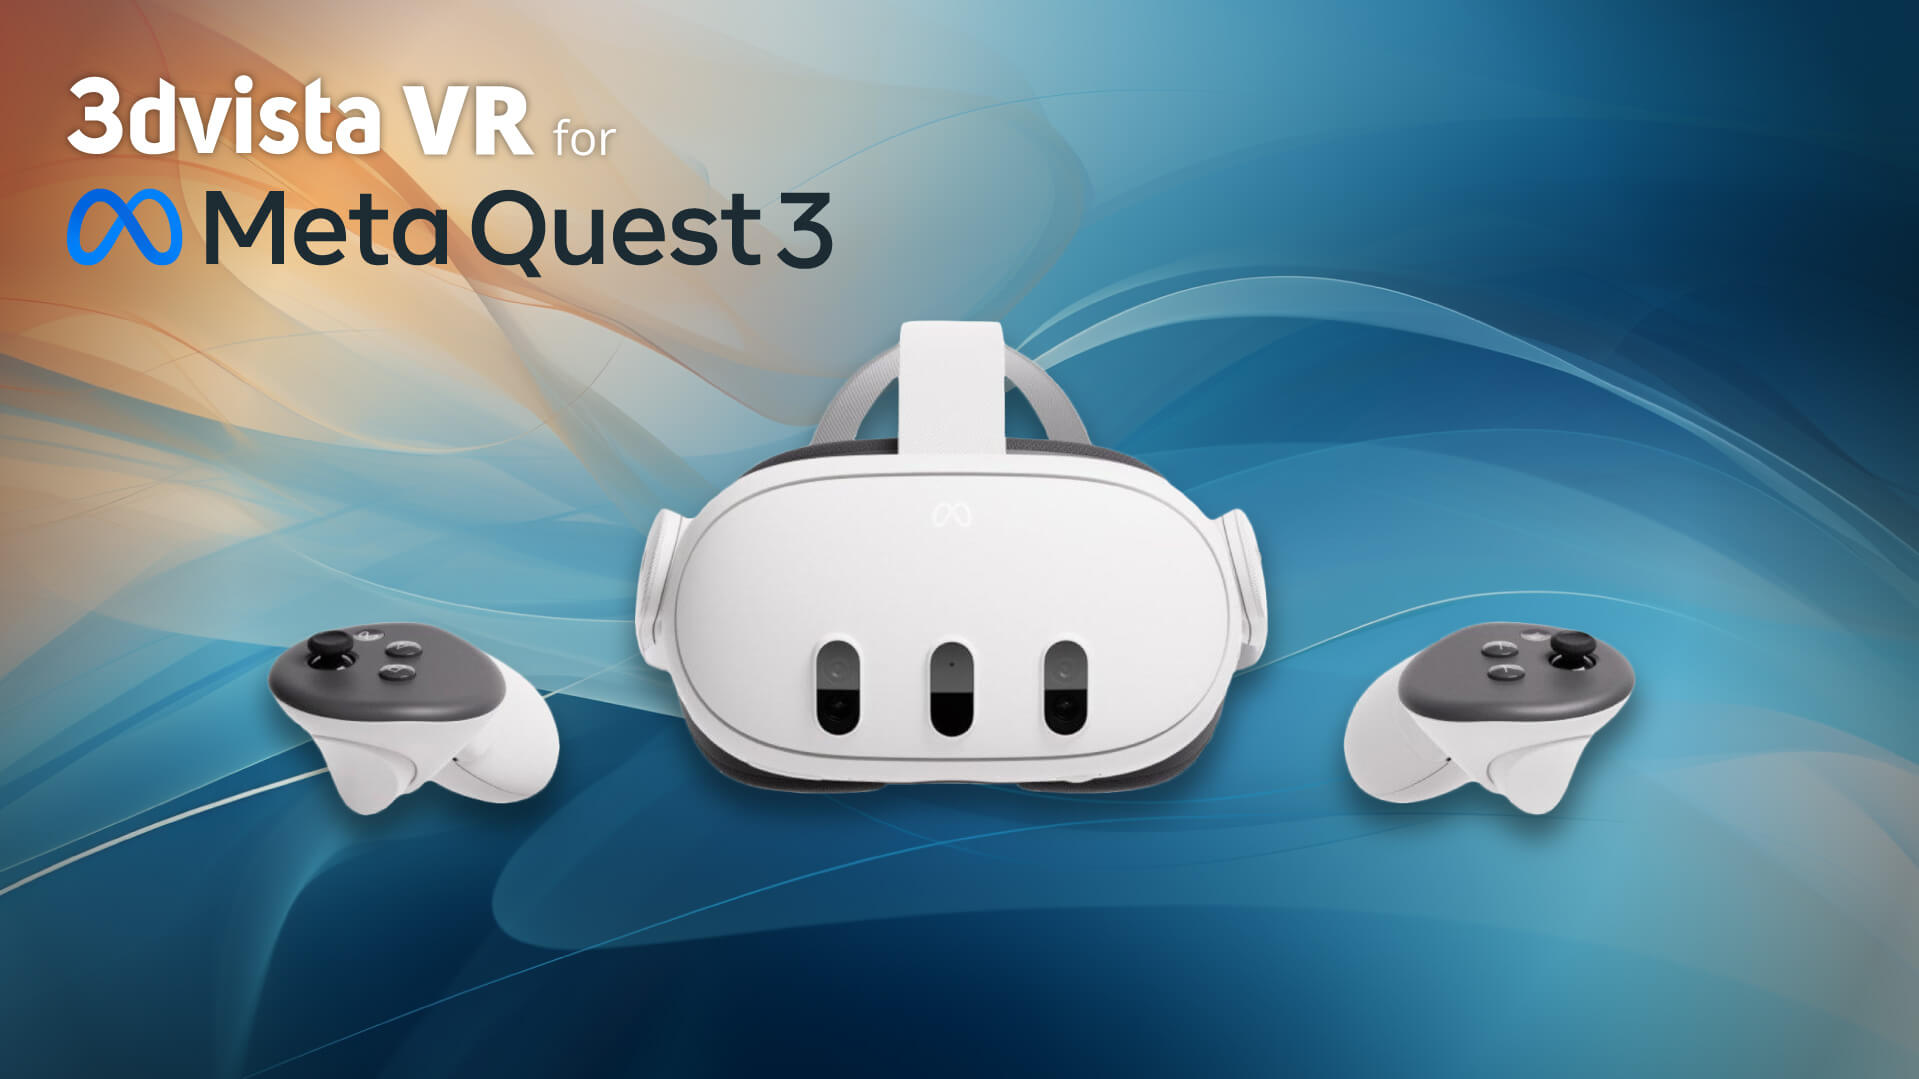 Quest 3 son las nuevas gafas de RV de Meta, ¿qué tienen?